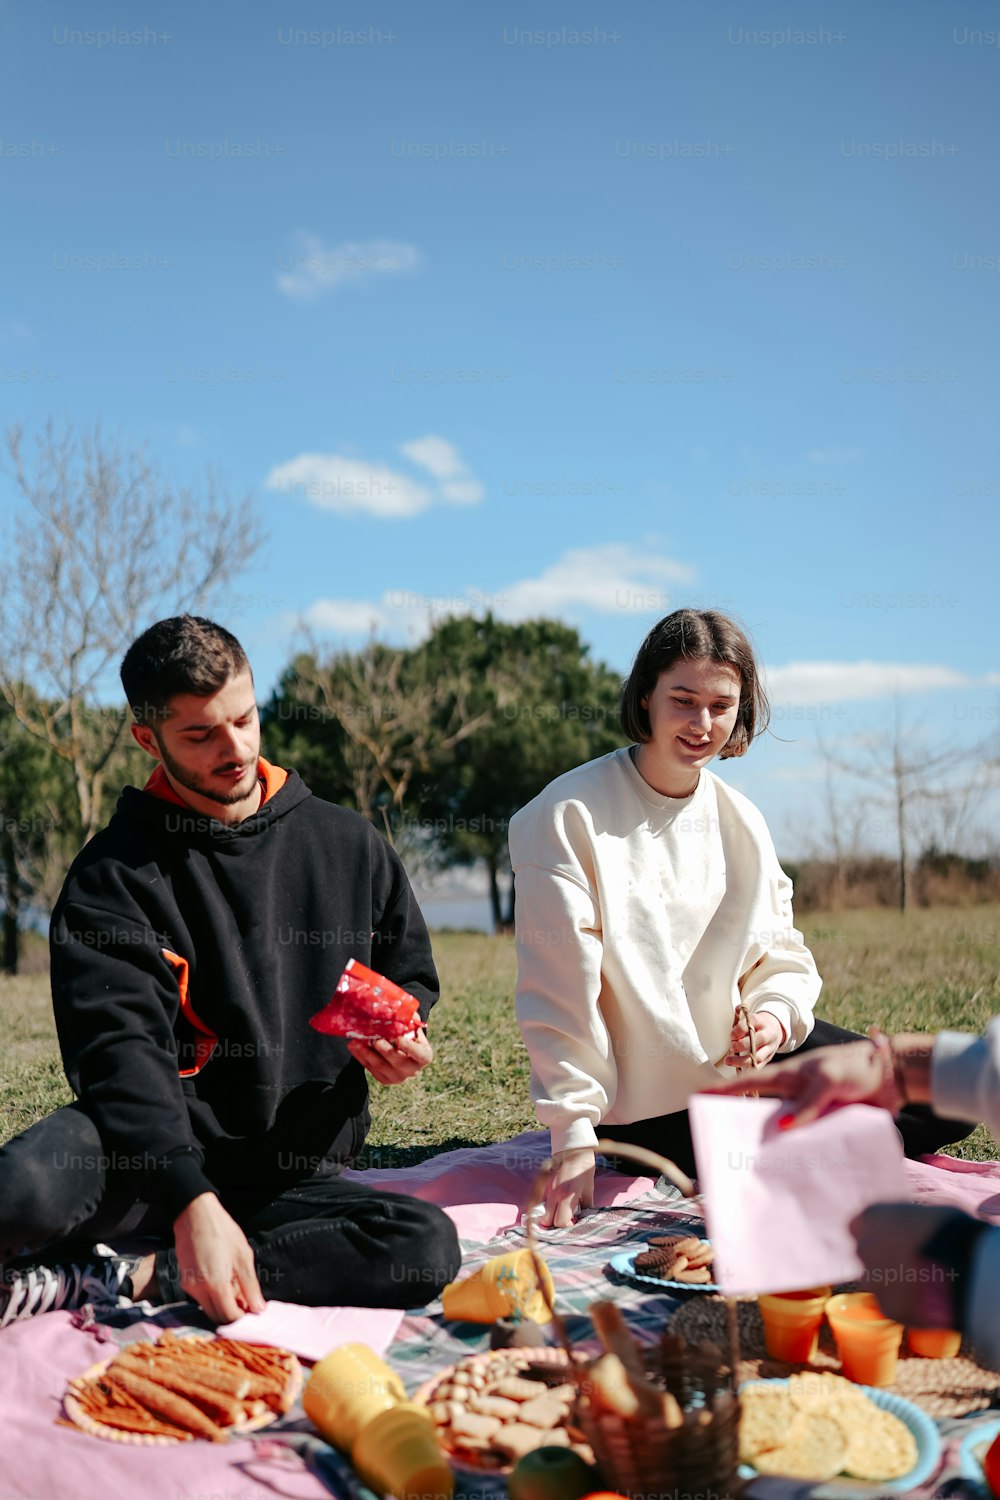 Un hombre y una mujer sentados sobre una manta comiendo alimentos